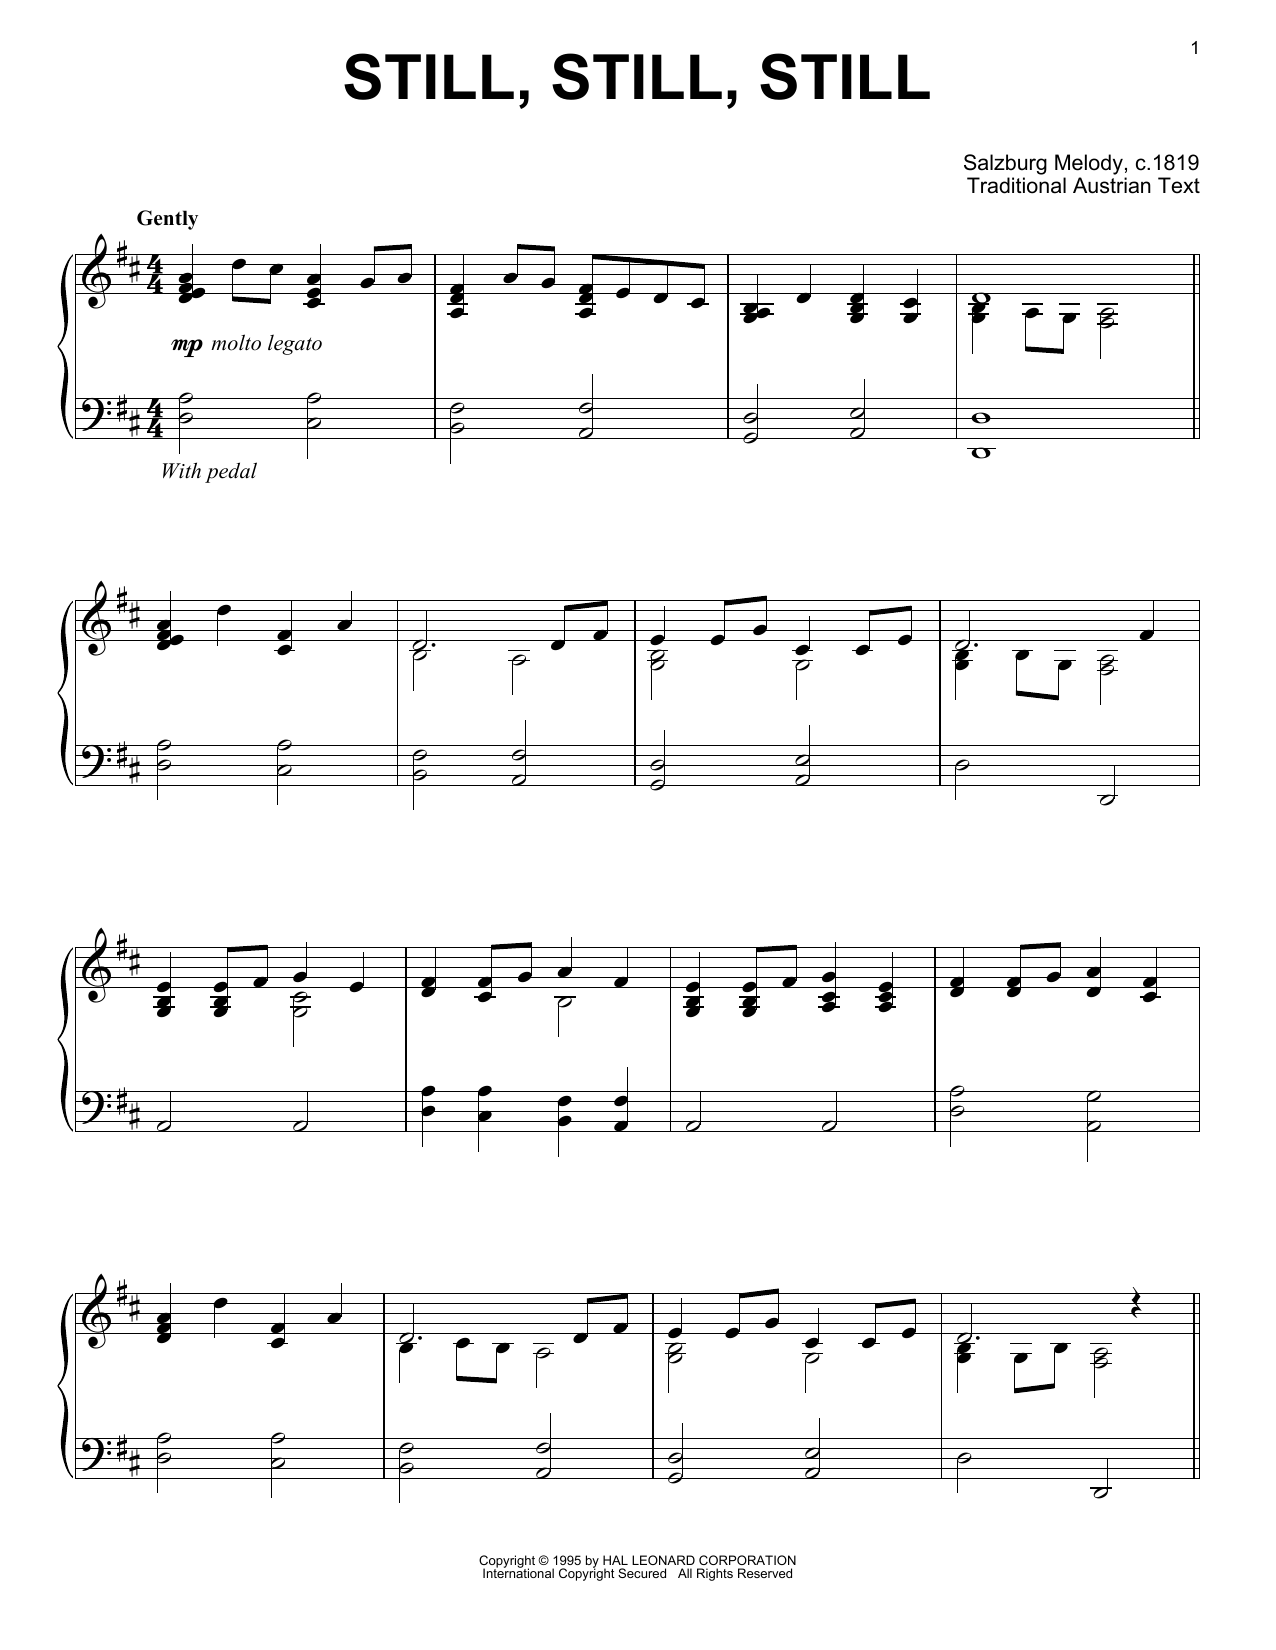 Traditional Austrian Text Still, Still, Still sheet music notes and chords arranged for 5-Finger Piano